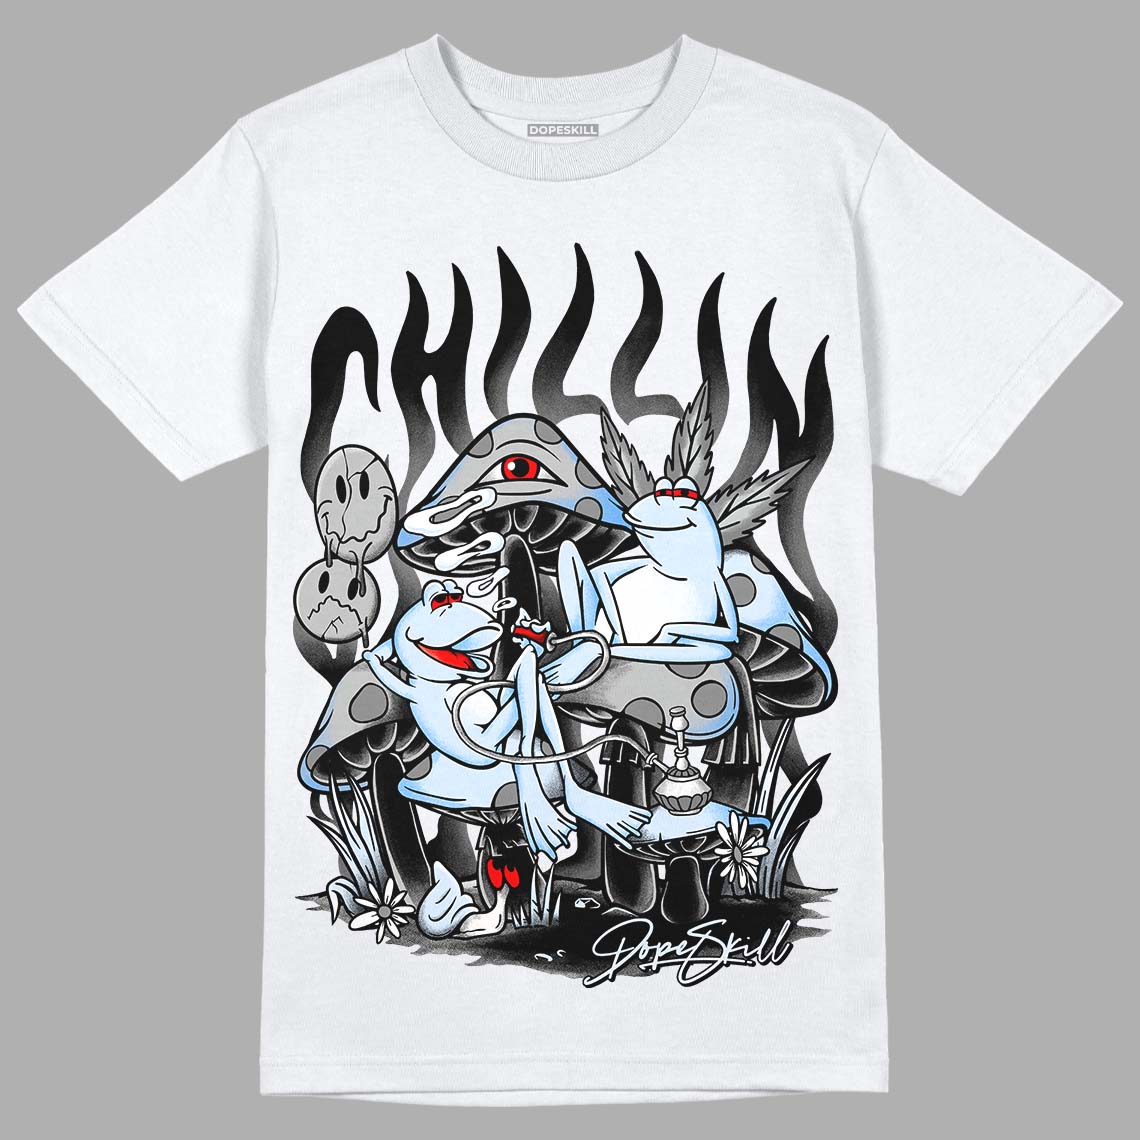 Black Metallic Chrome 6s DopeSkill T-Shirt Chillin Graphic - White